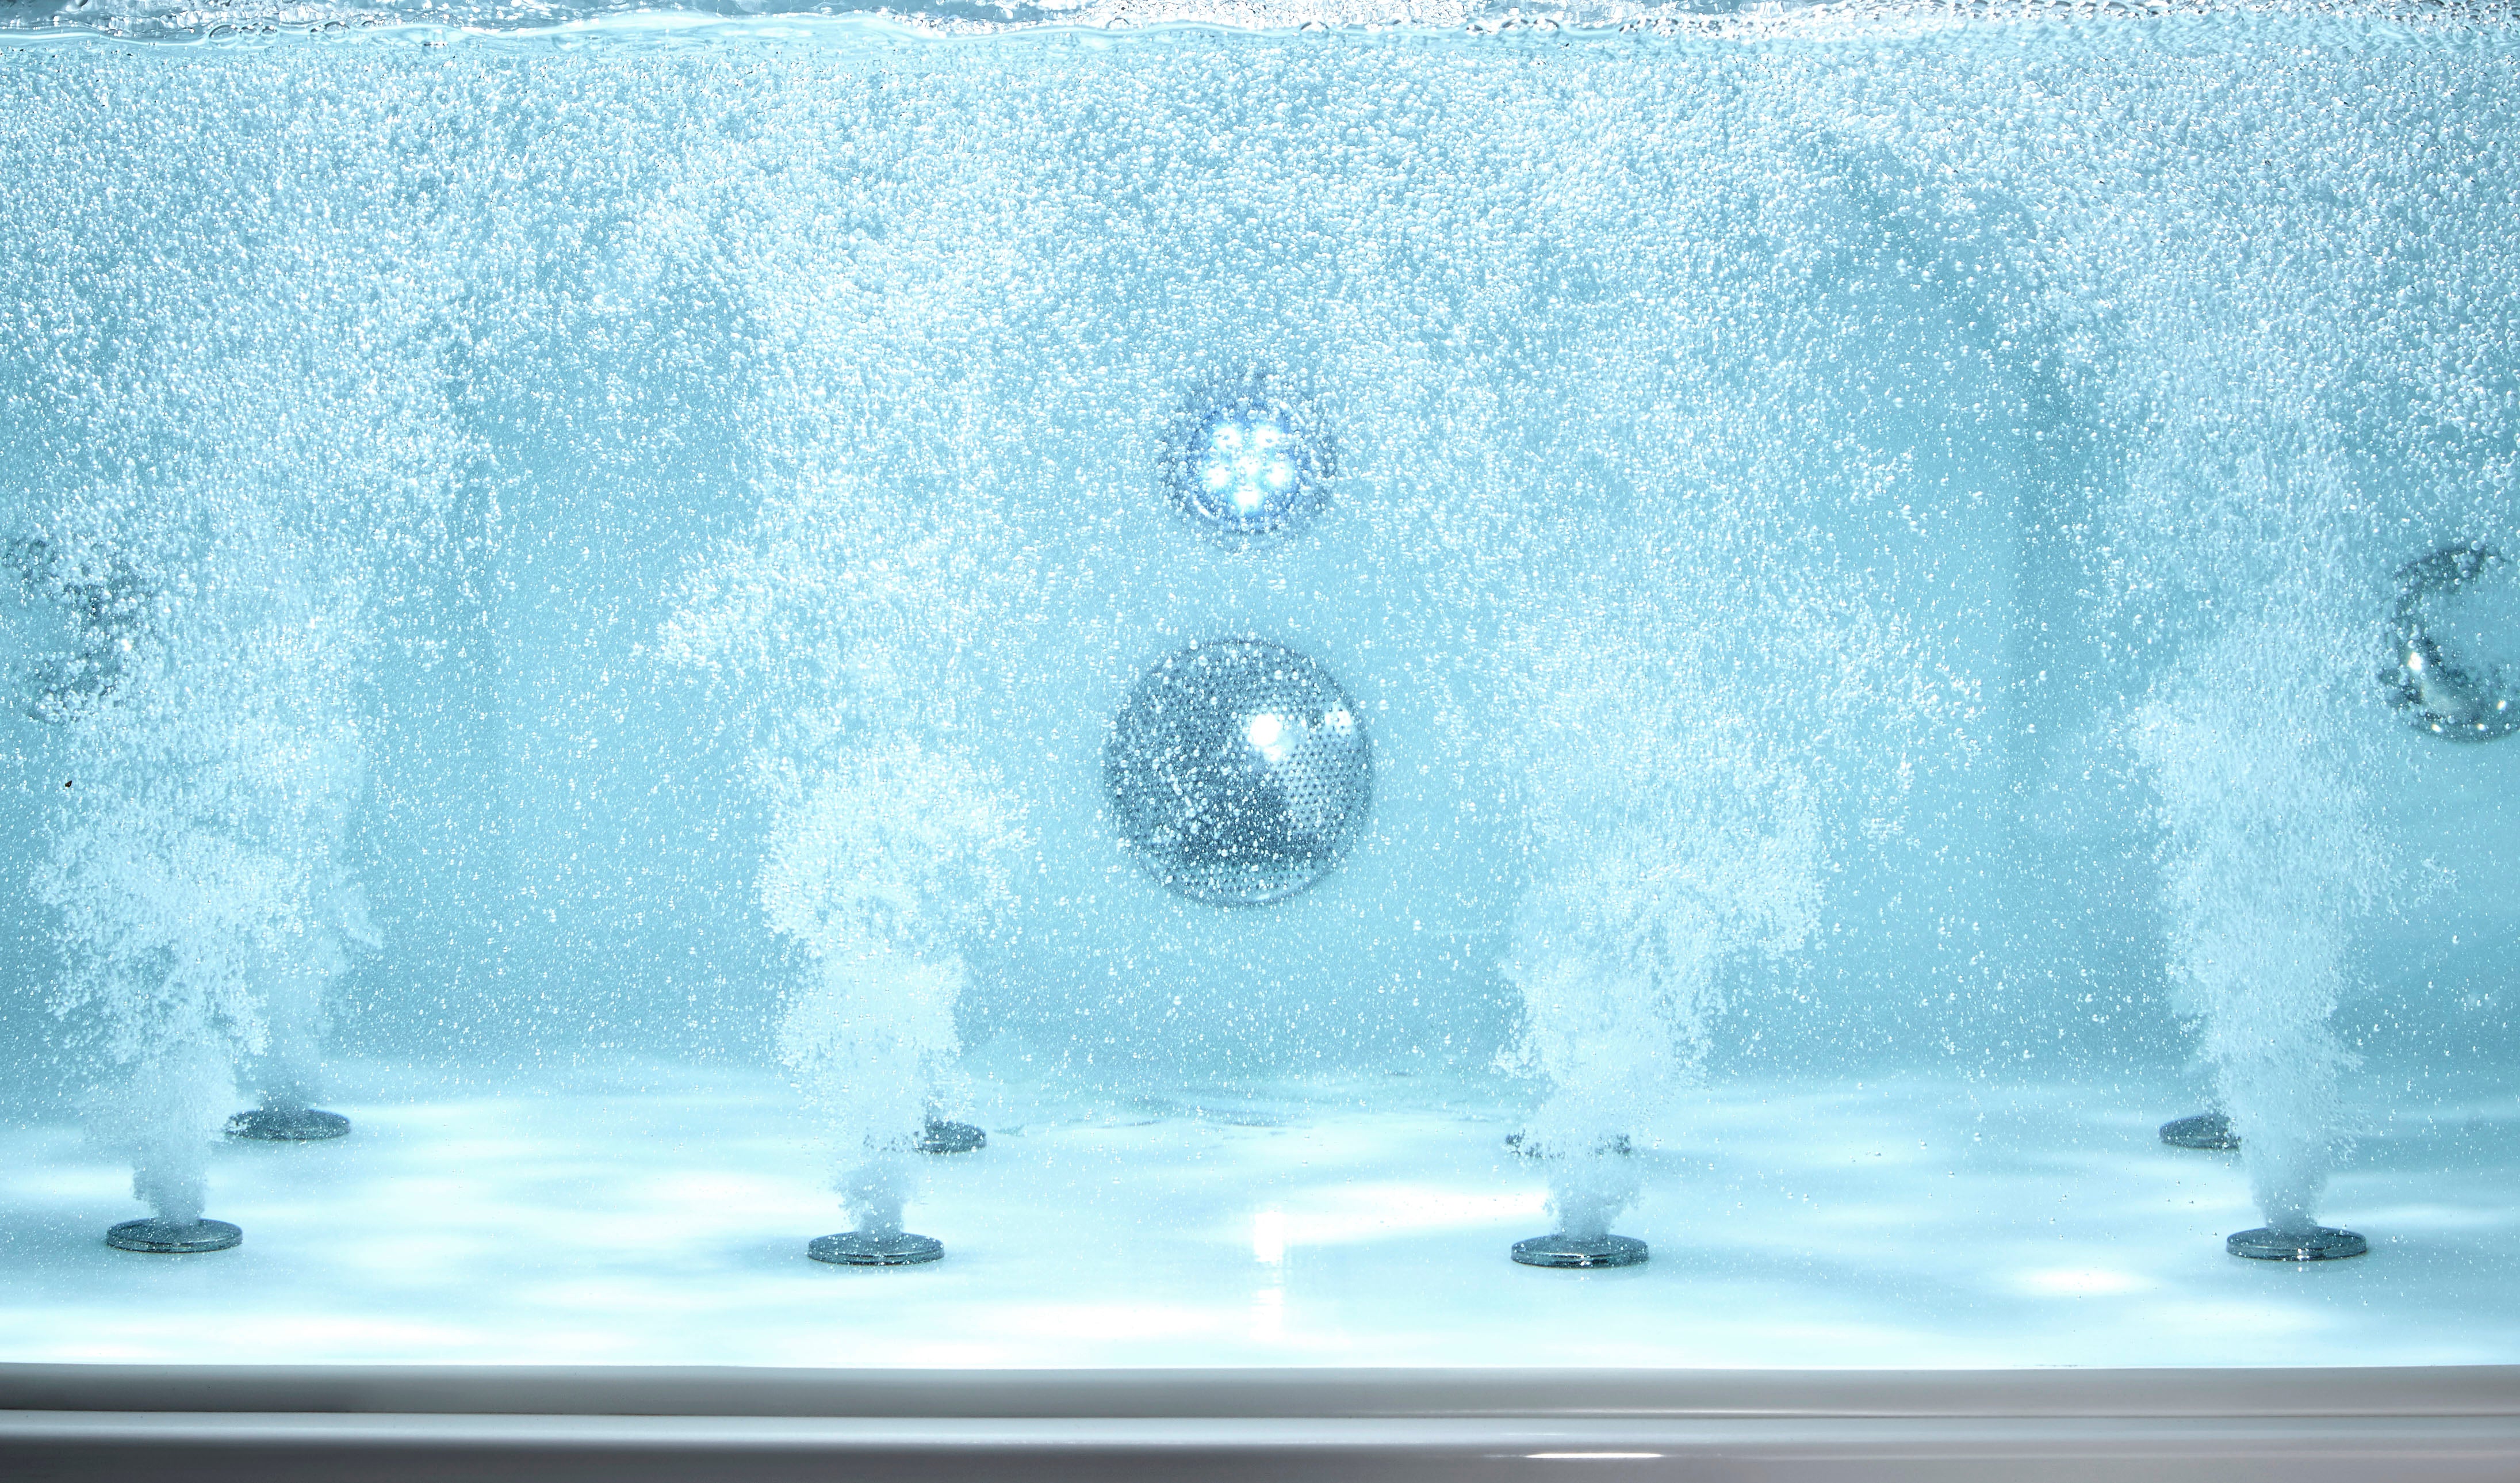 EAGO AM196ETL Whirlpool Bathtub Clear Rectangular Acrylic for Two (6-foot)